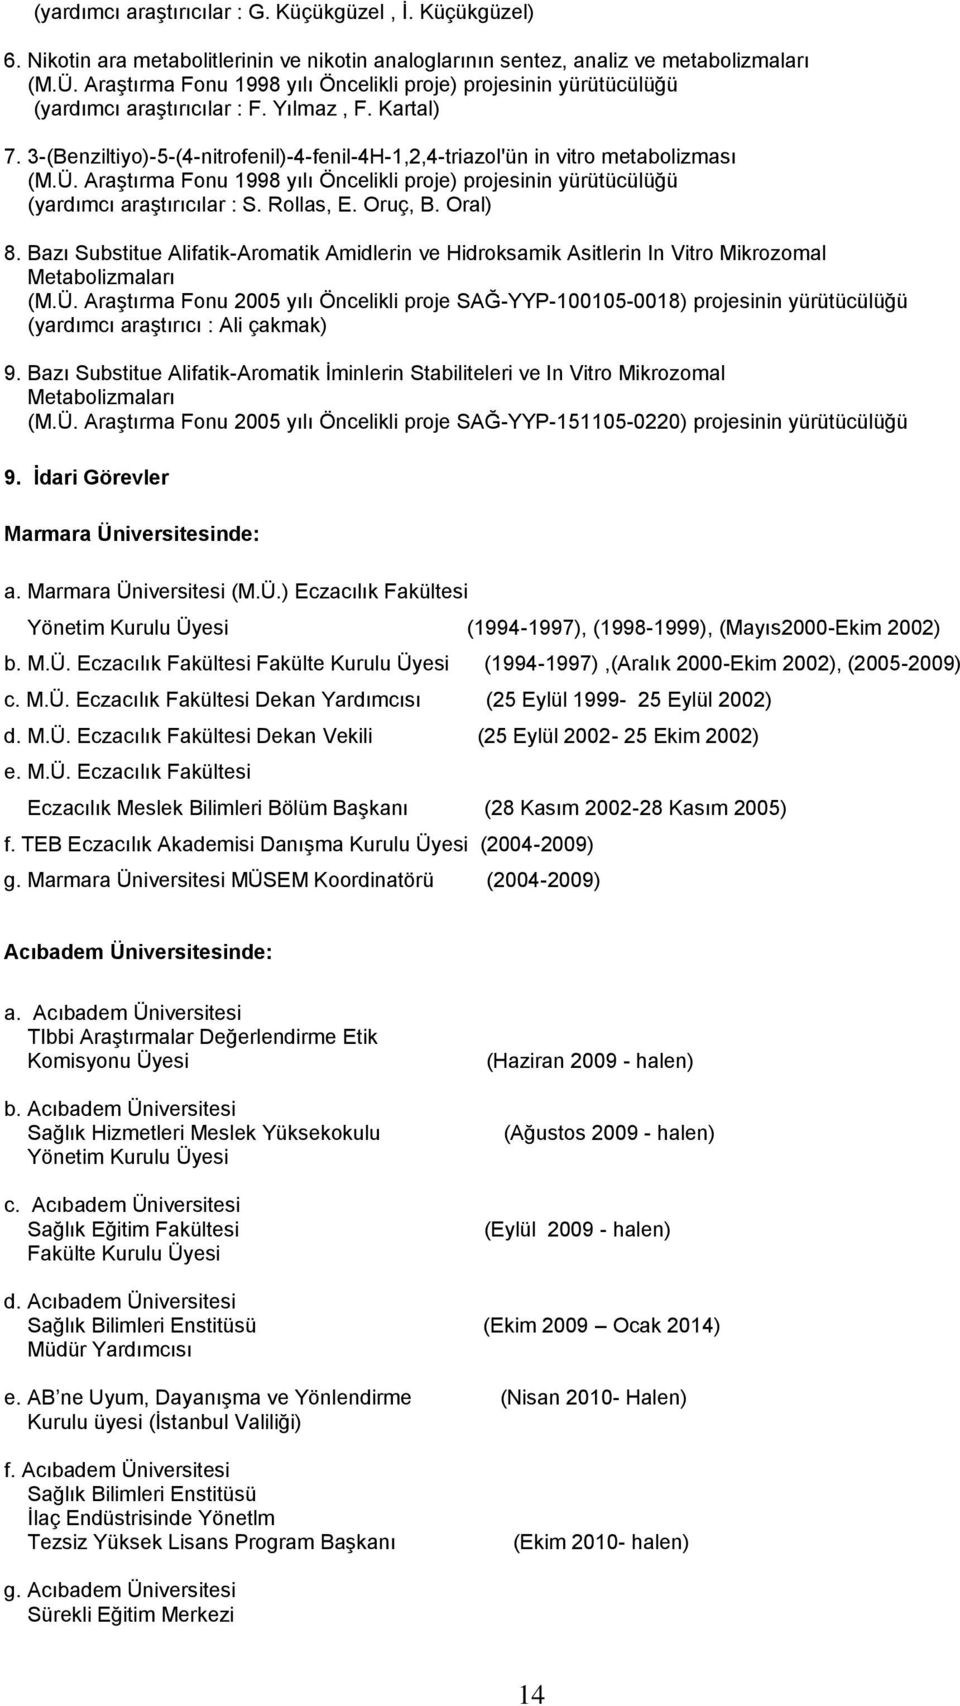 3-(Benziltiyo)-5-(4-nitrofenil)-4-fenil-4H-1,2,4-triazol'ün in vitro metabolizması (M.Ü. AraĢtırma Fonu 1998 yılı Öncelikli proje) projesinin yürütücülüğü (yardımcı araģtırıcılar : S. Rollas, E.